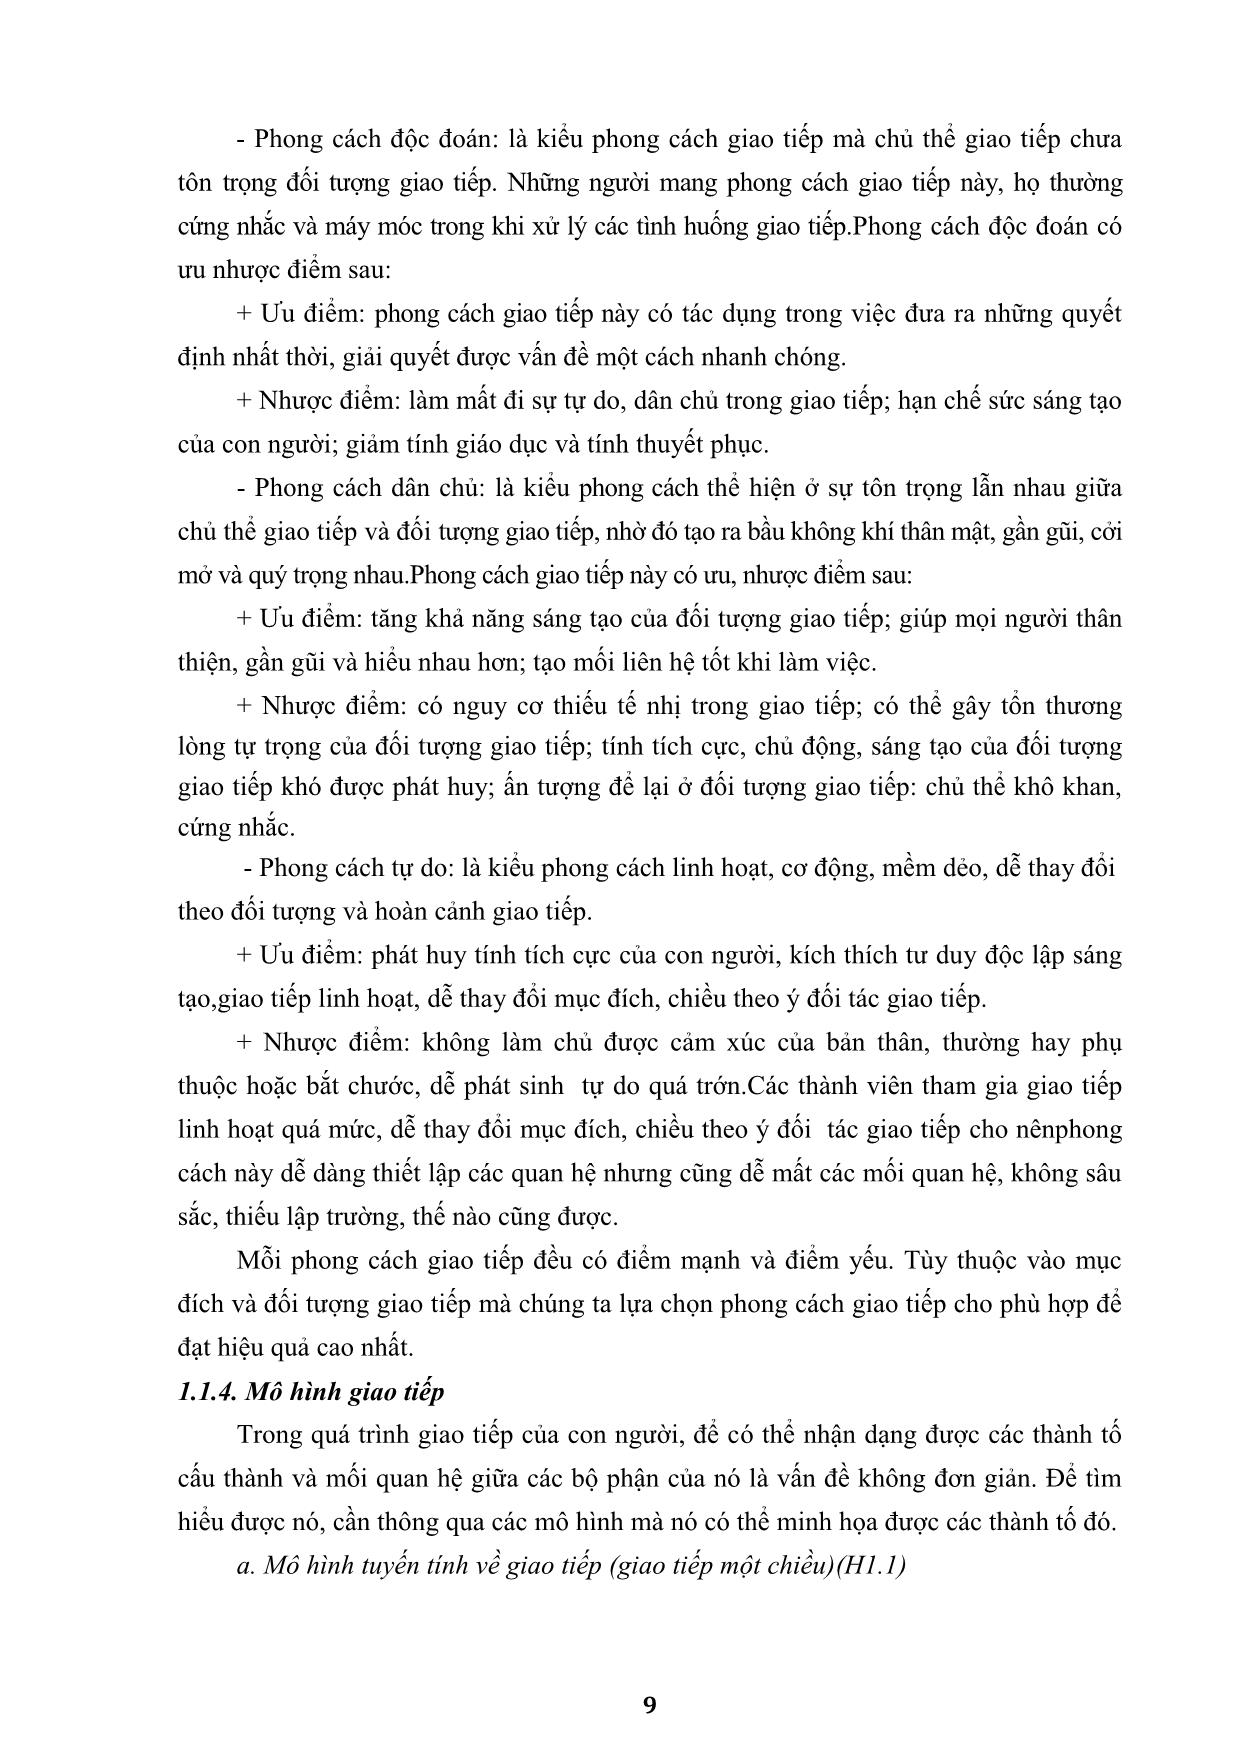 Giáo trình môn Kỹ năng giao tiếp (Bản đẹp) trang 10